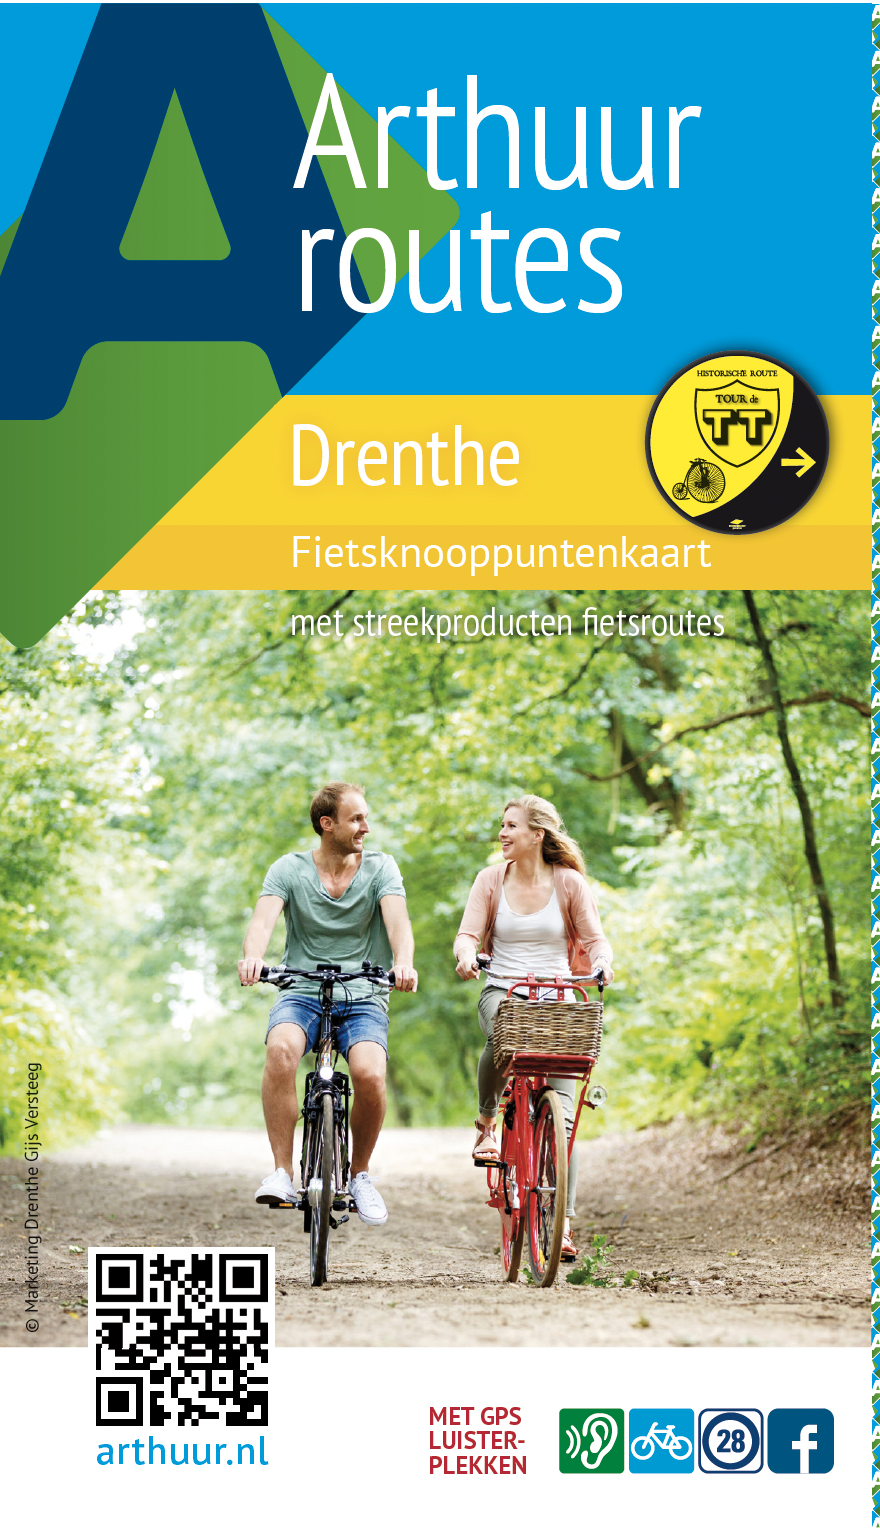 Afbeelding is van de cover van de Arthuur fietsknooppuntenkaart Drenthe. Op de afbeelding fietsen twee fietsers op fietspad door bomenrij in het bos.